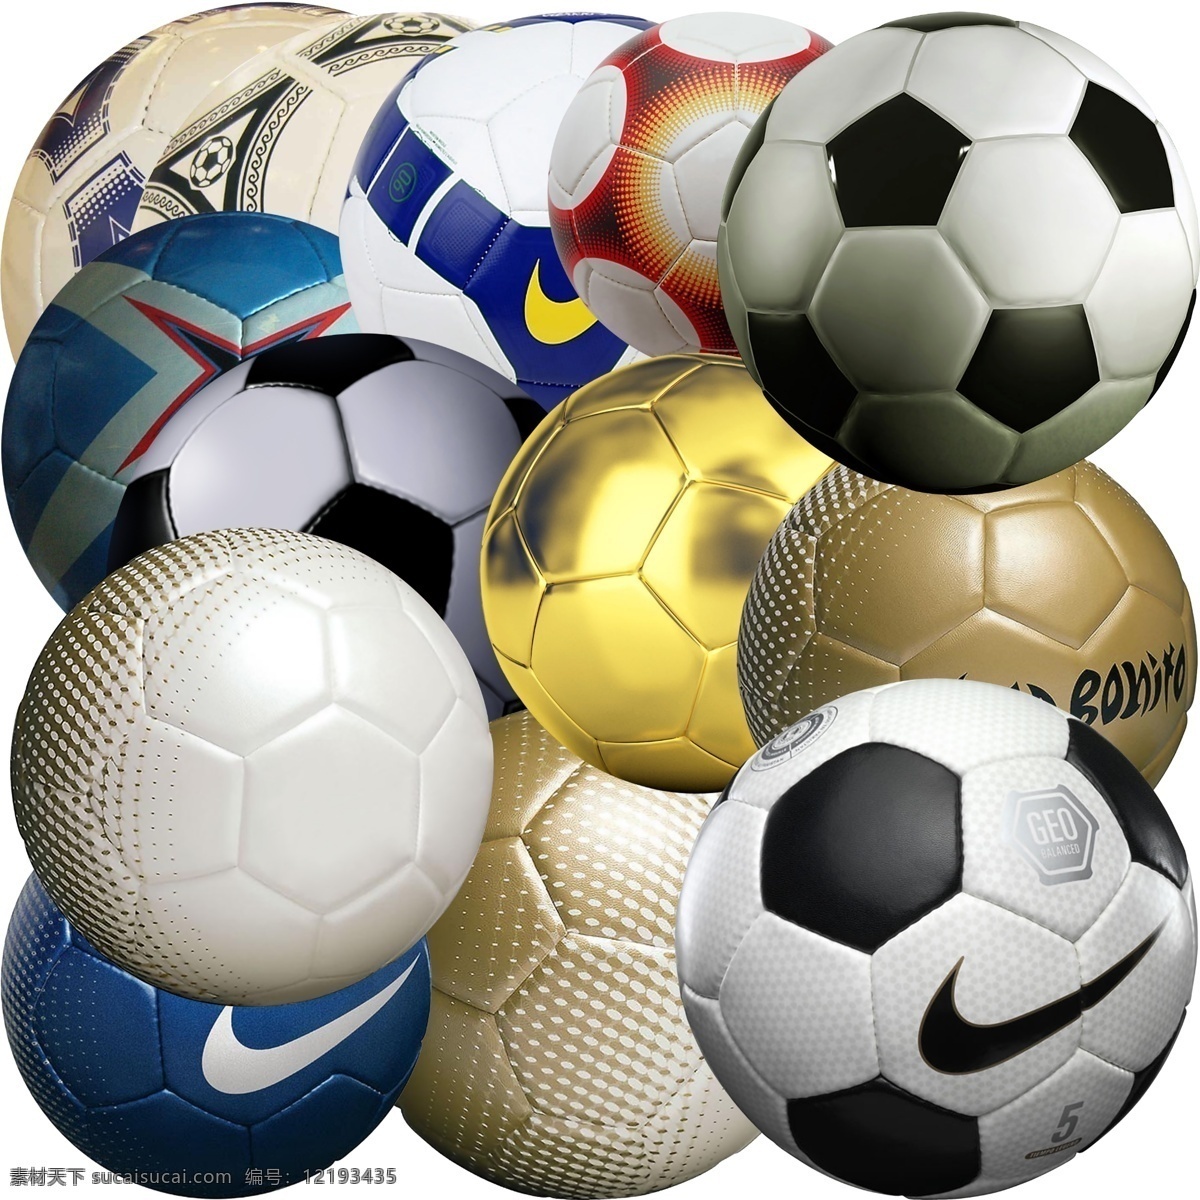 足球 模版下载 足球素材下载 足球模板下载 球 足球psd 体育 运动 世界杯 耐克 体育用品 体育文化 金球 皮球 源文件